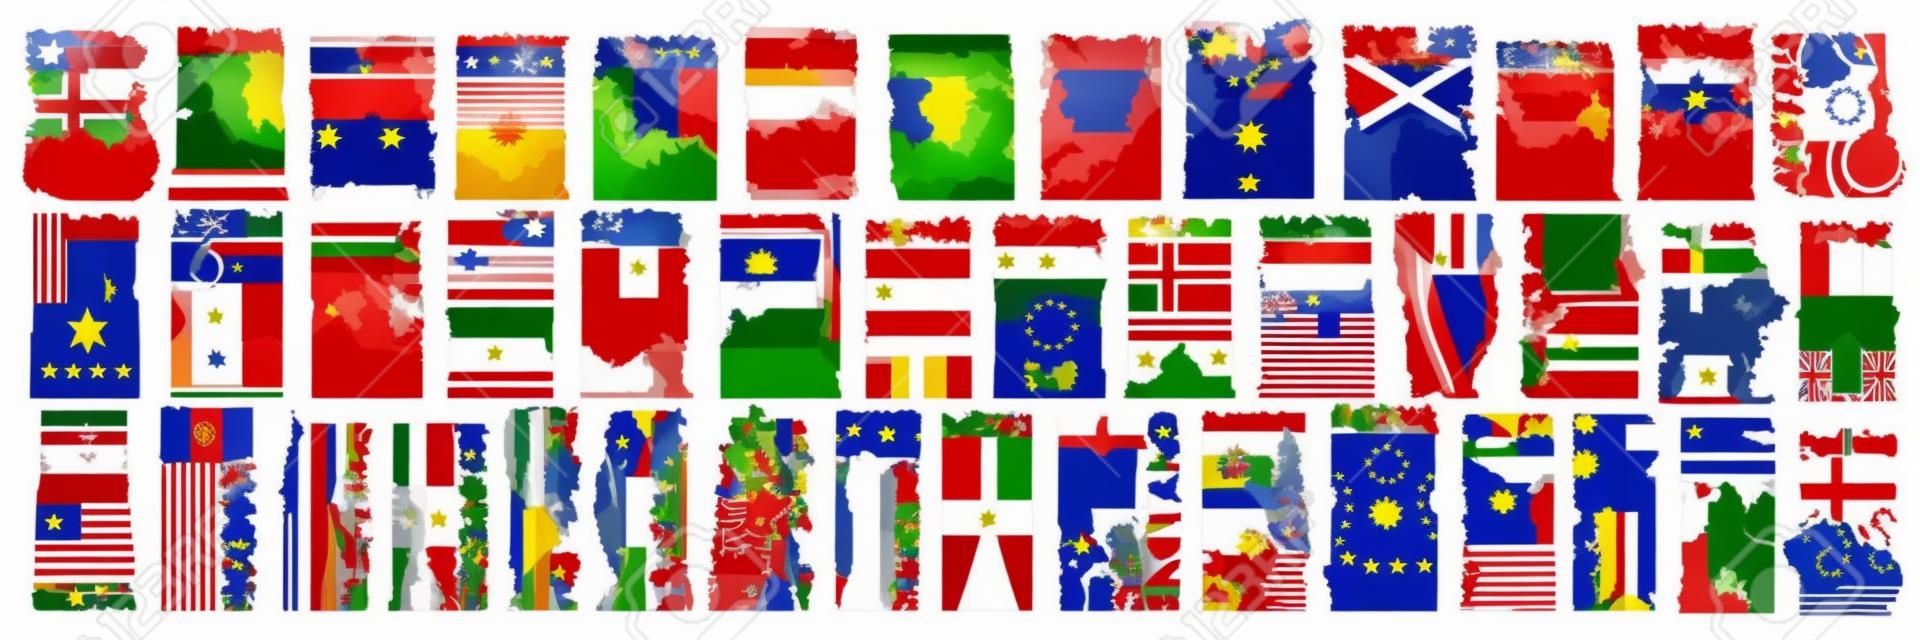 Vector conjunto de países europeos con banderas y símbolos, 43 etiquetas verticales aisladas con banderas estatales nacionales y fuente de pincel para diferentes palabras, pegatinas de diseño de arte para el día de la independencia europea.